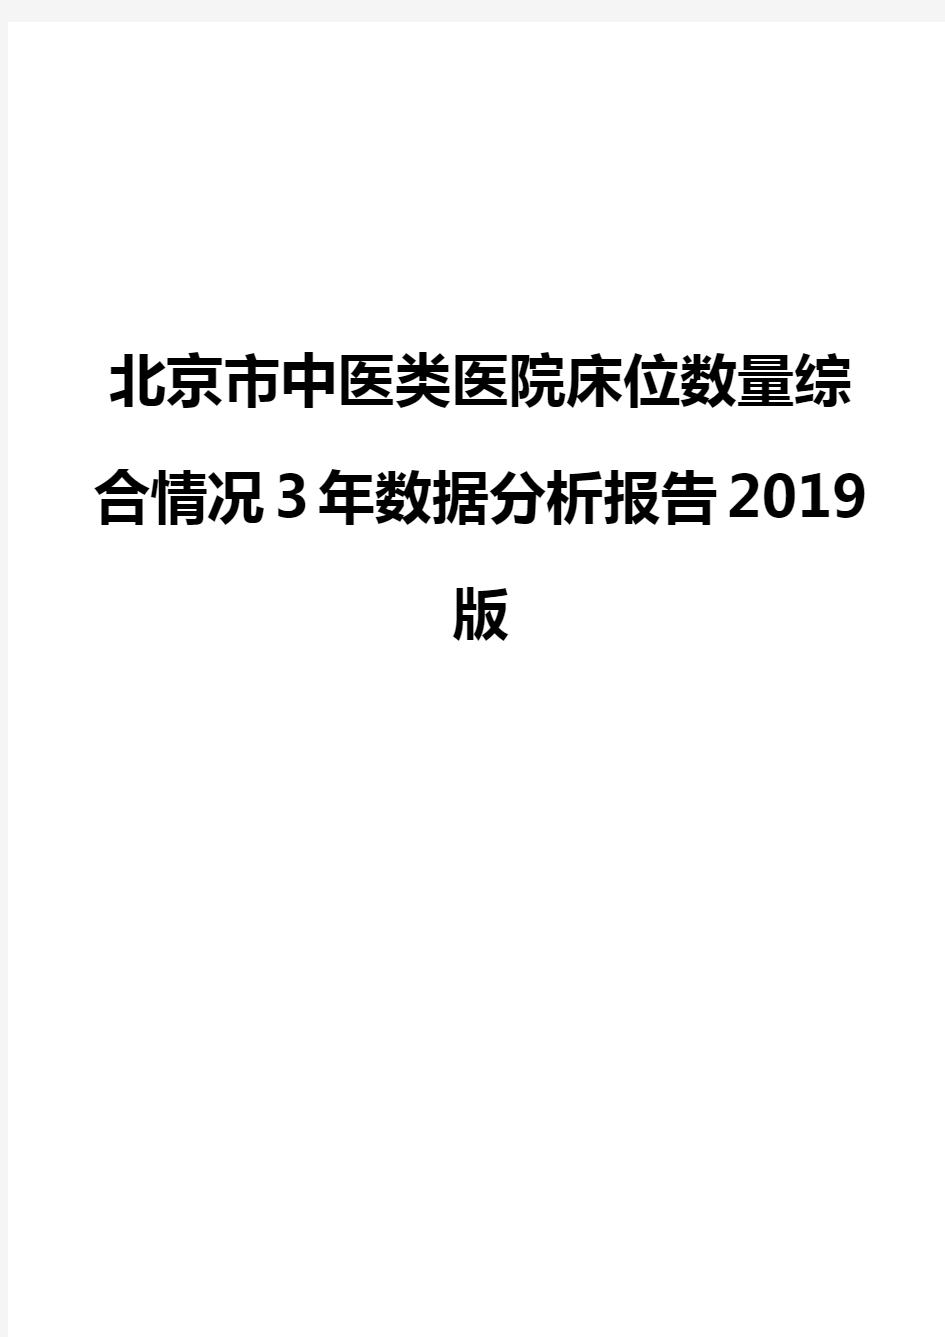 北京市中医类医院床位数量综合情况3年数据分析报告2019版